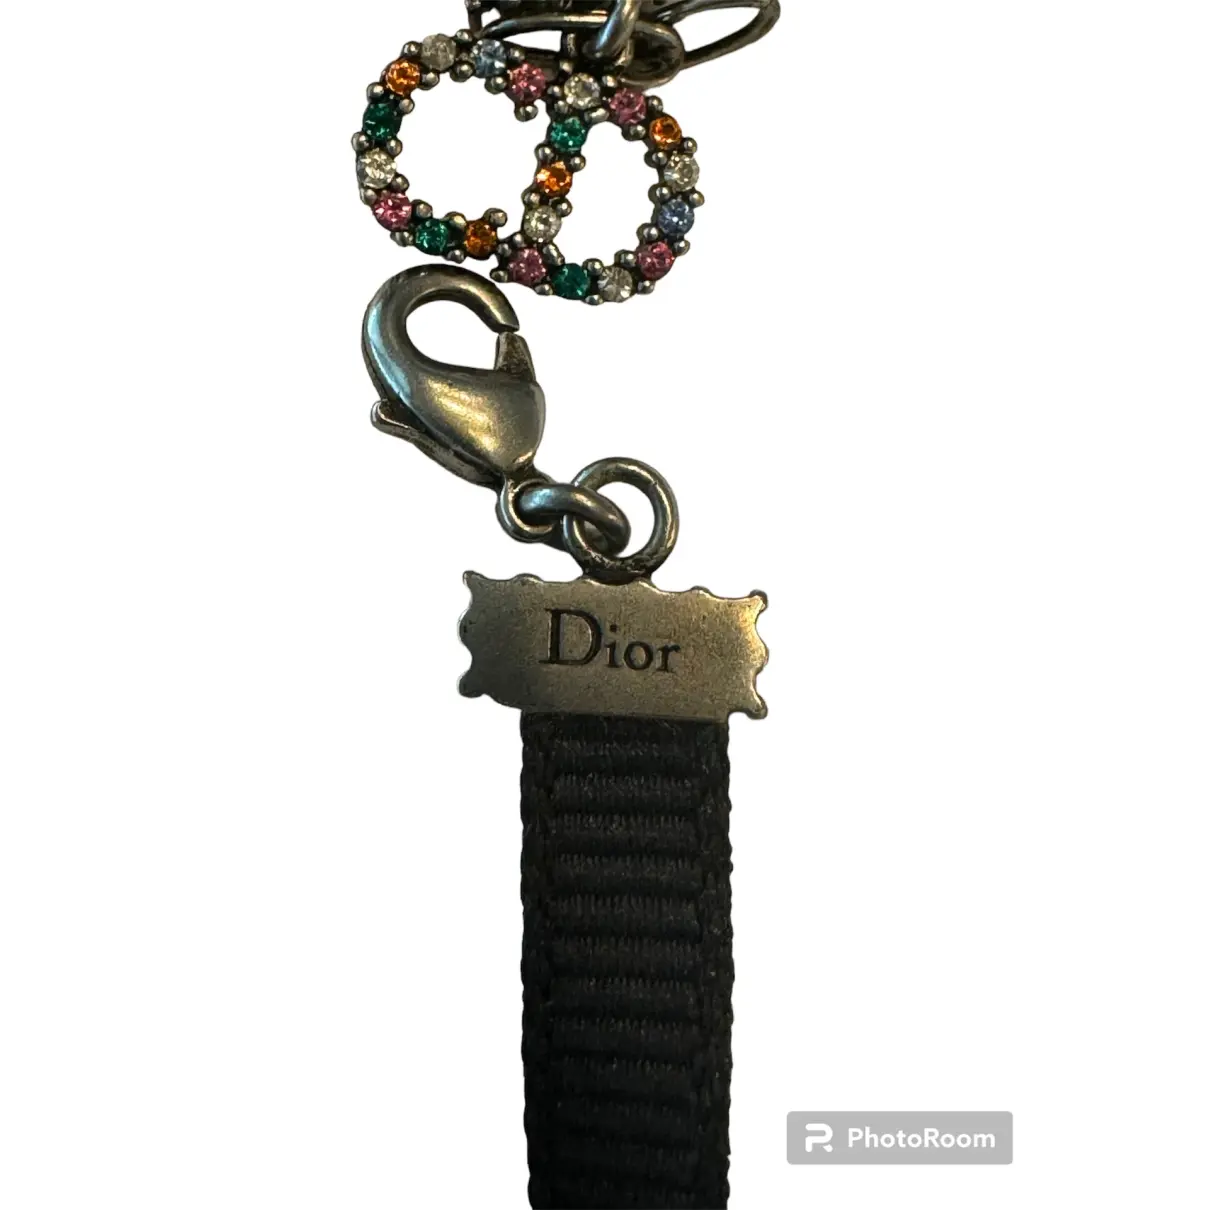 Buy Dior Dio(r)evolution cloth necklace online